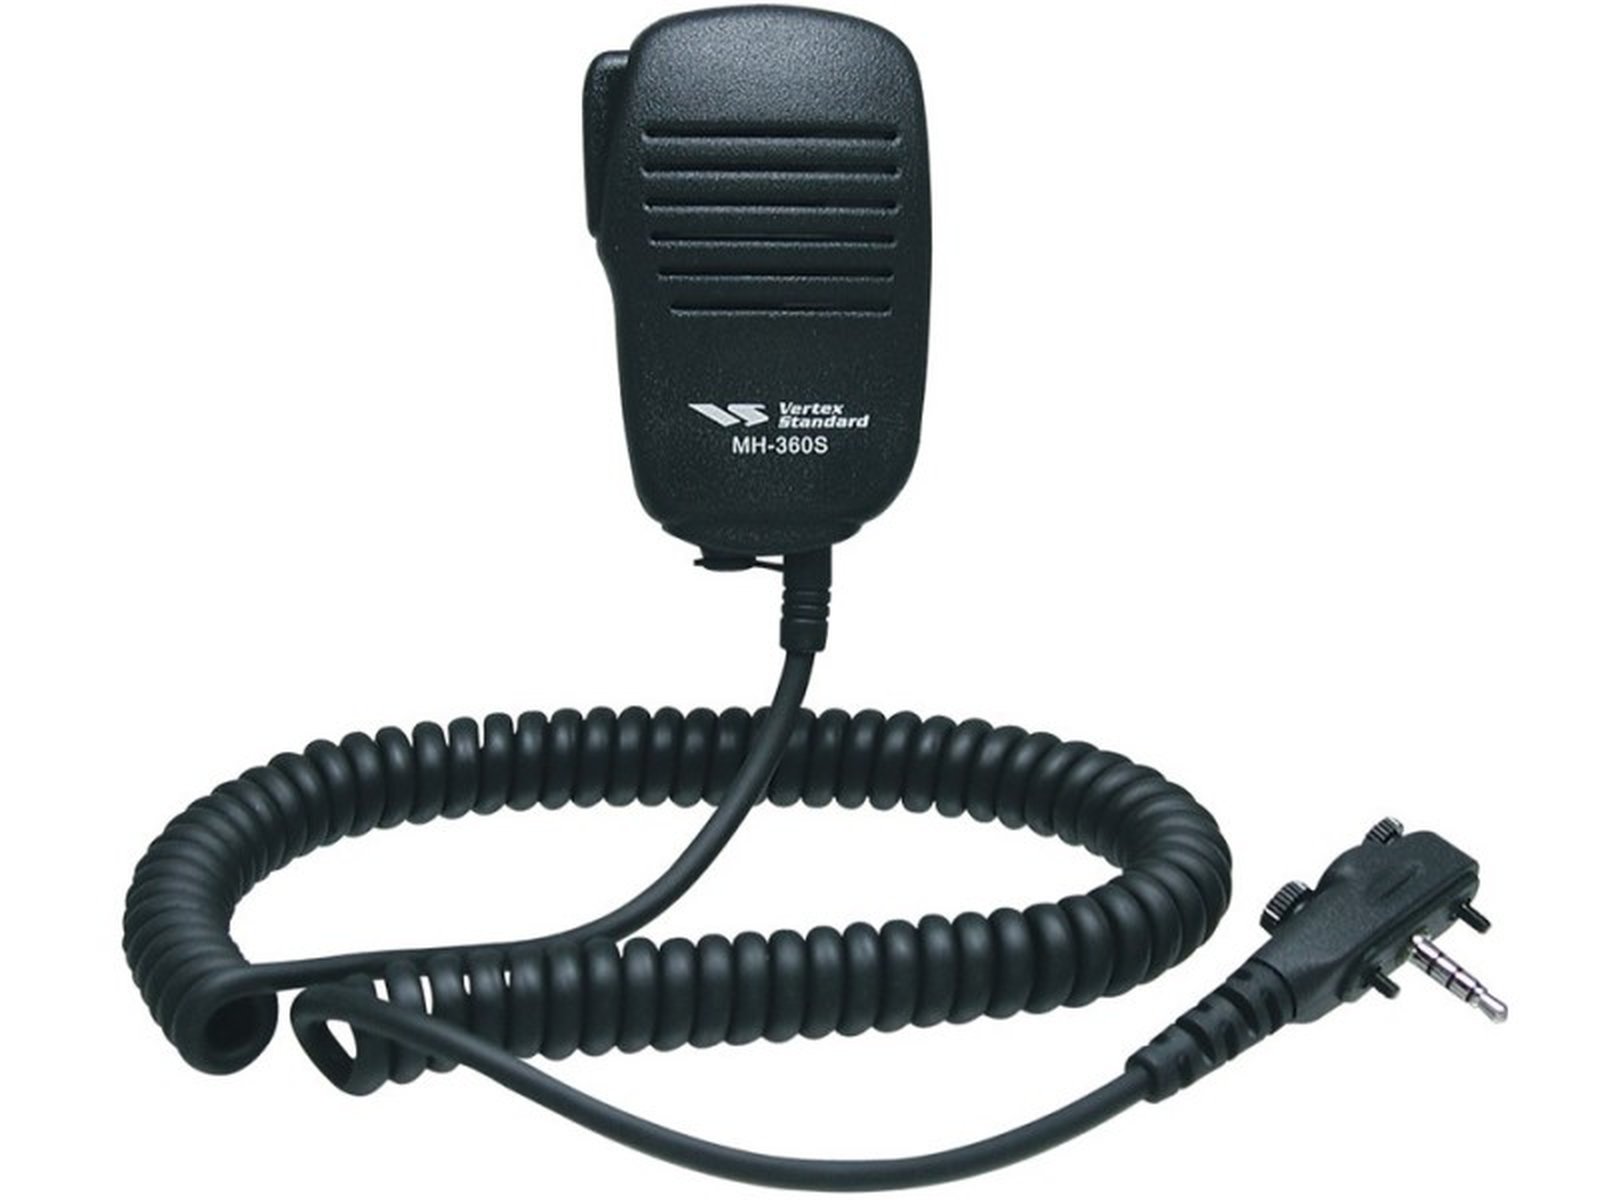 Vertex Standard MH-360S Lautsprechermikrofon